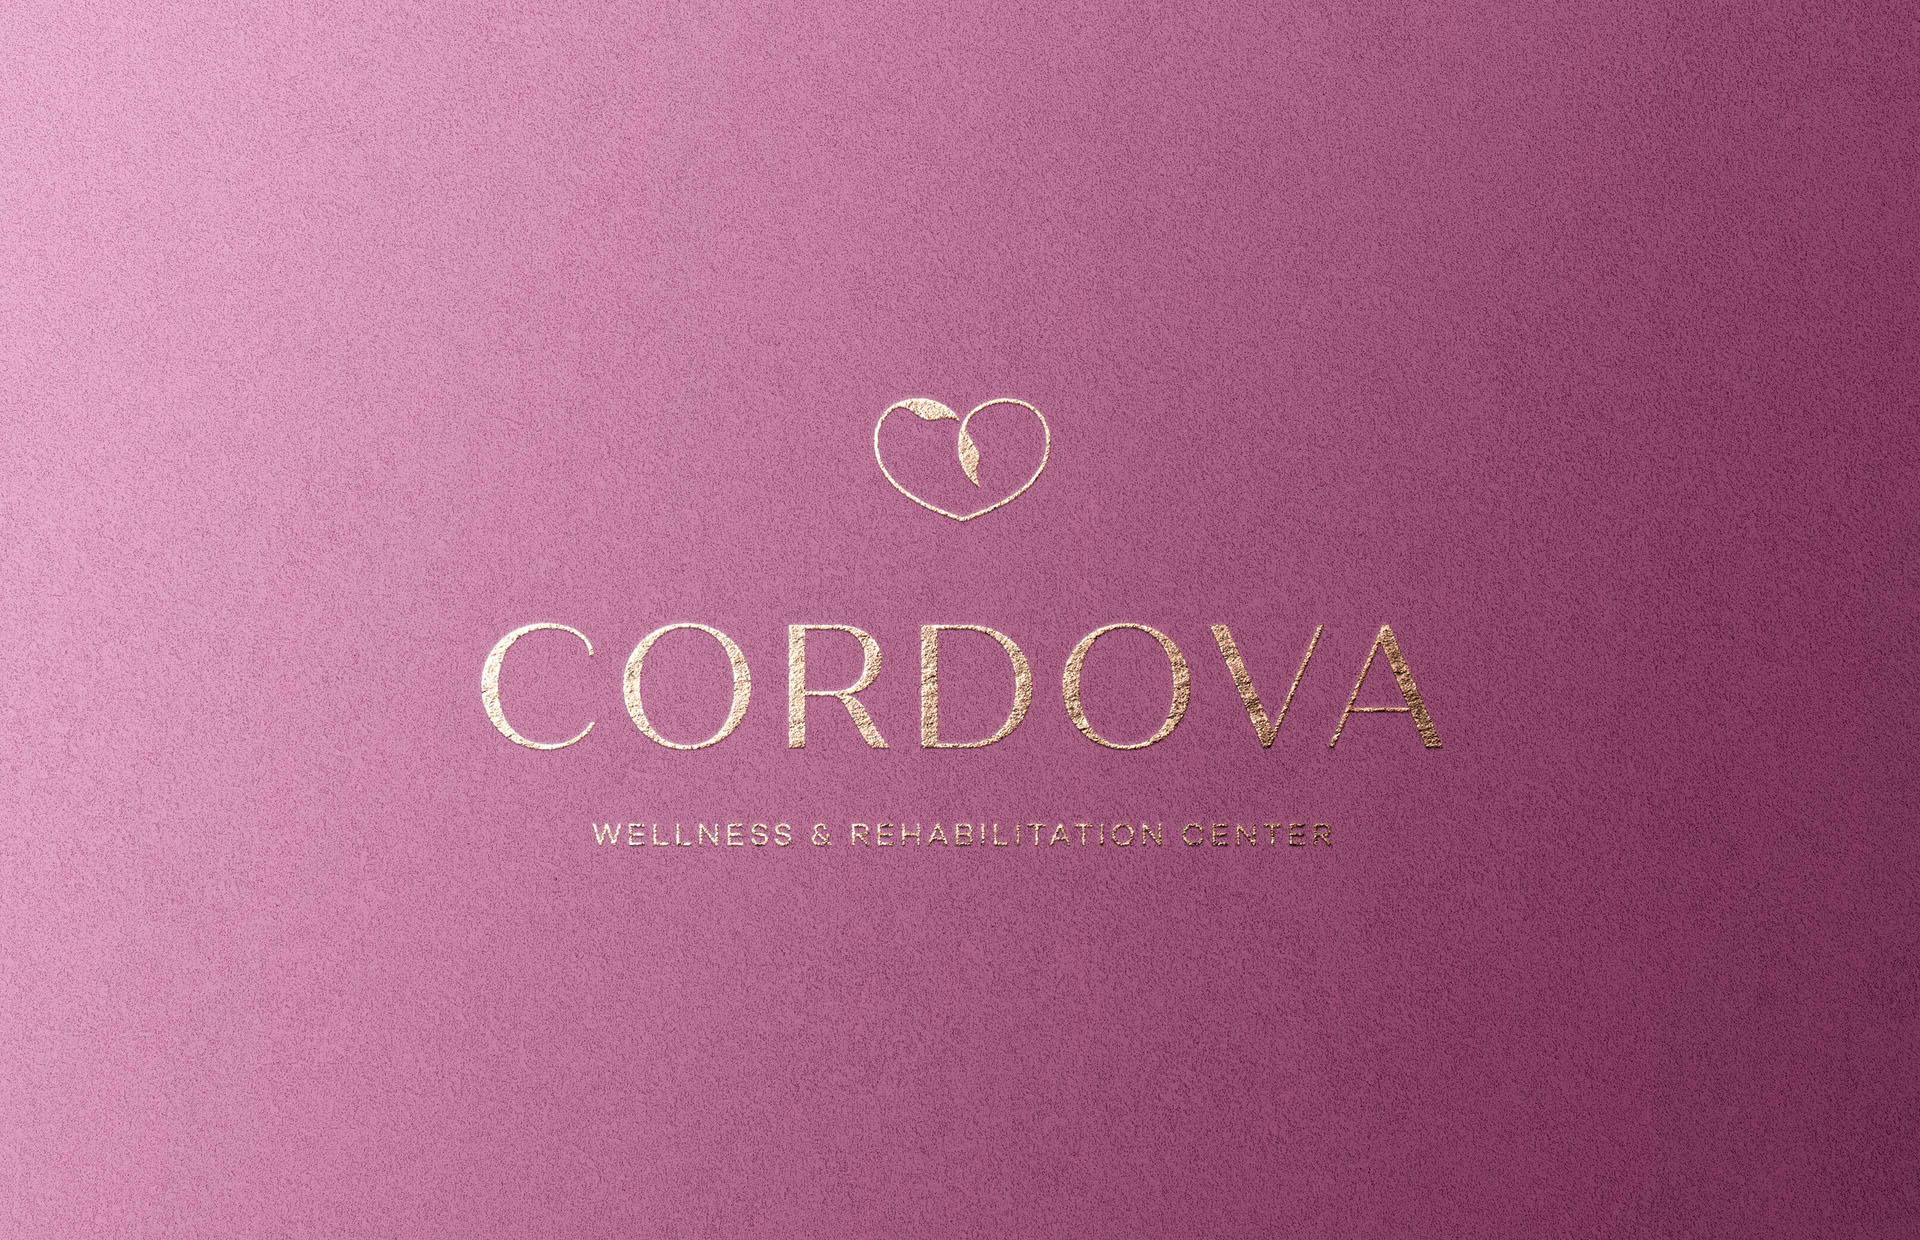 cordova app icon generator